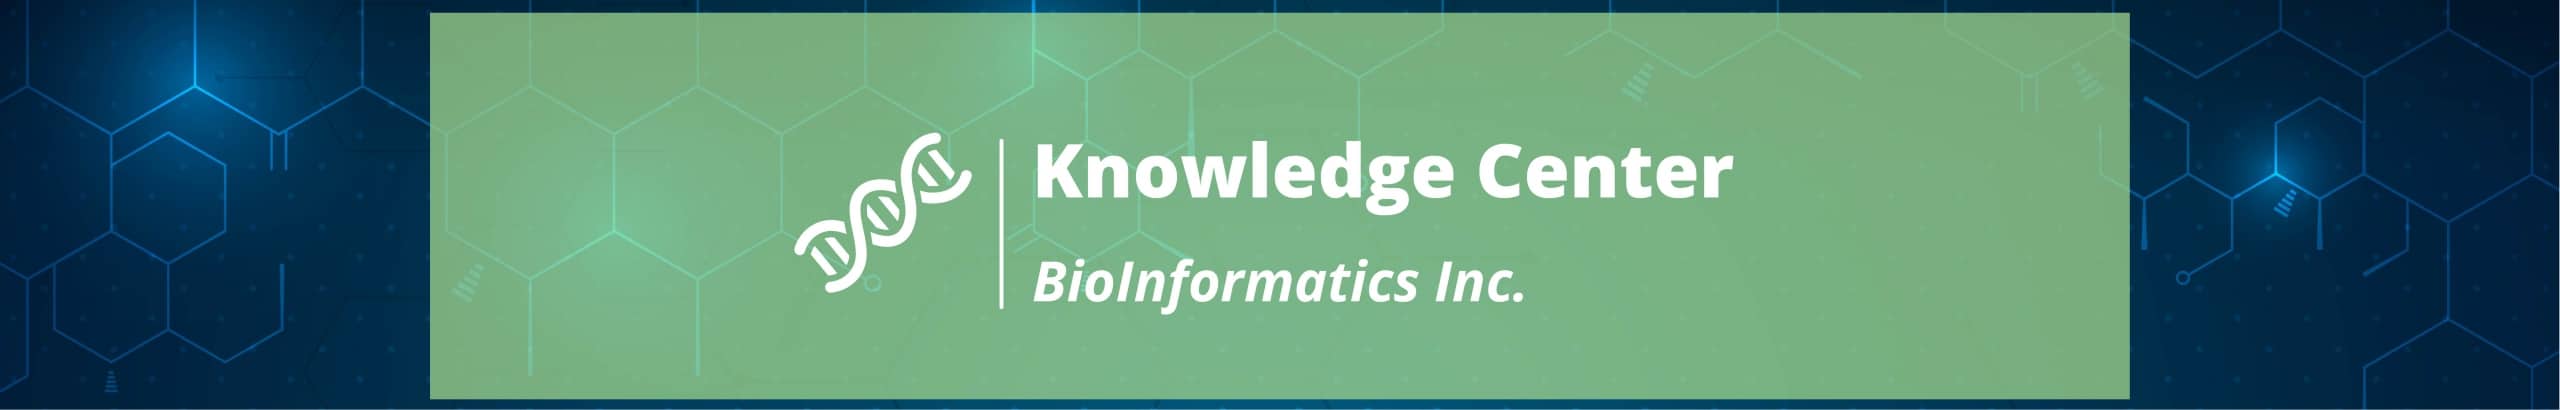 BioInfo Knowledge Center banner